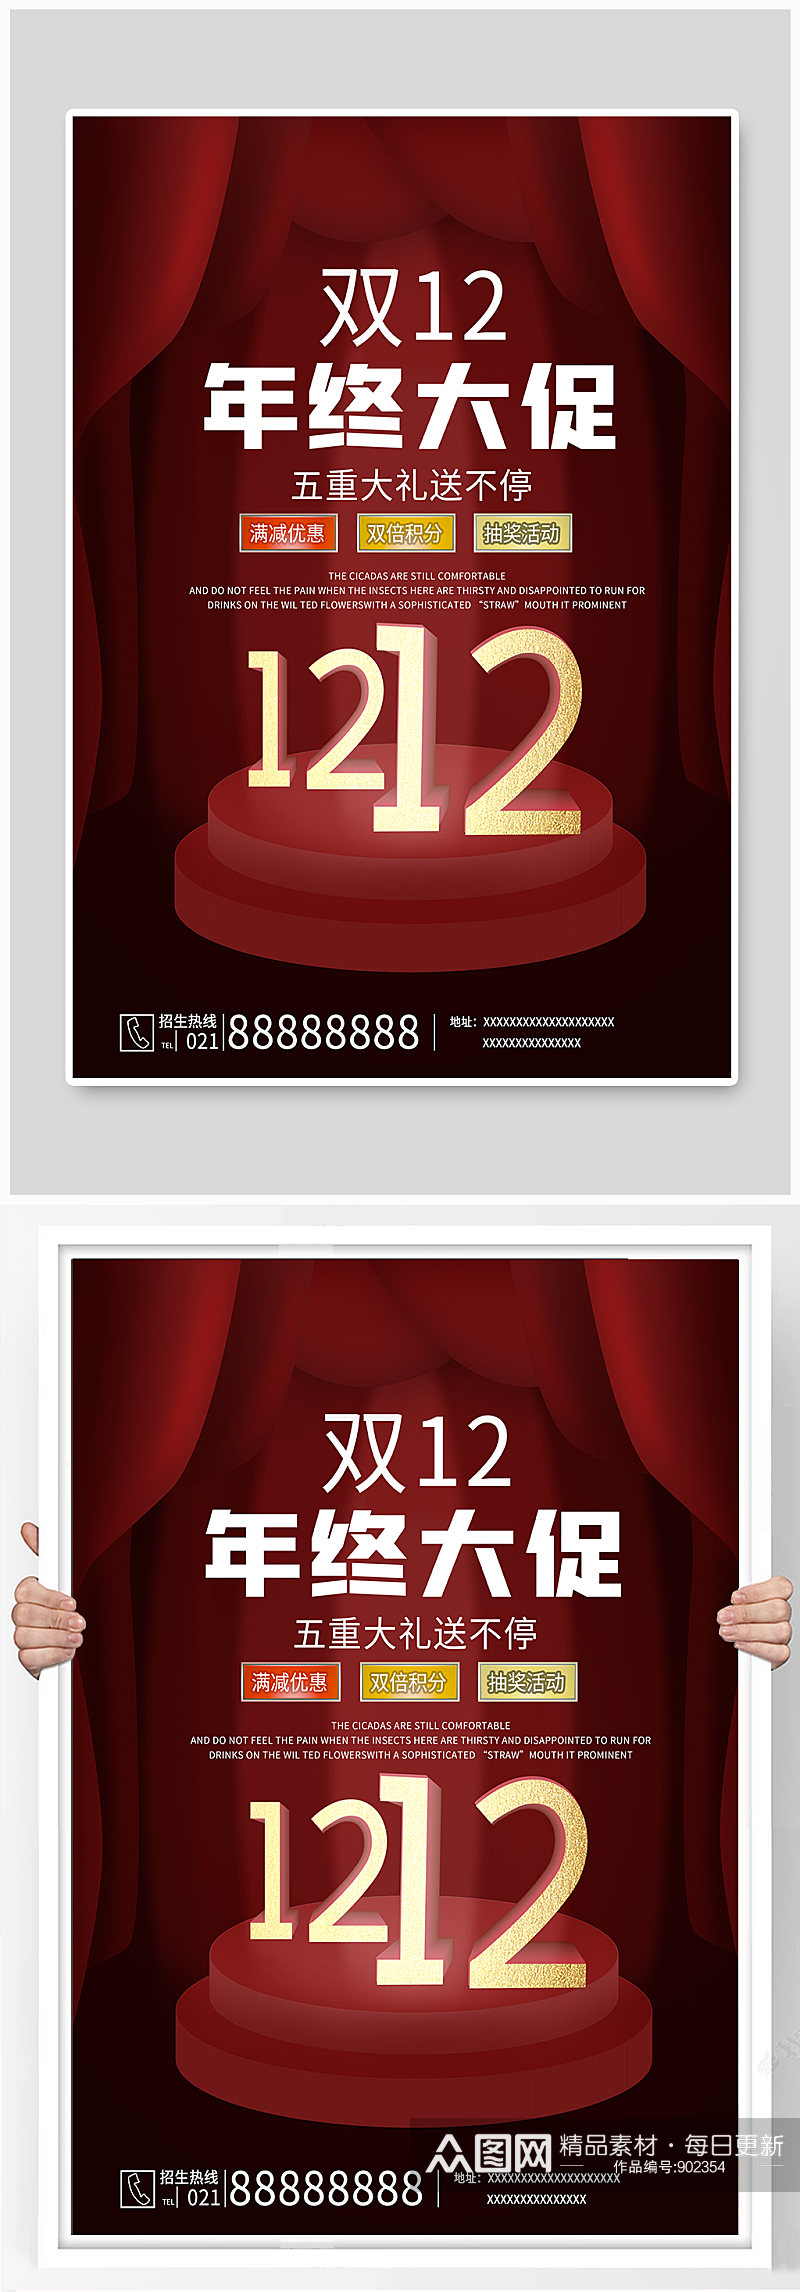 双十二红色简约大气促销宣传海报素材